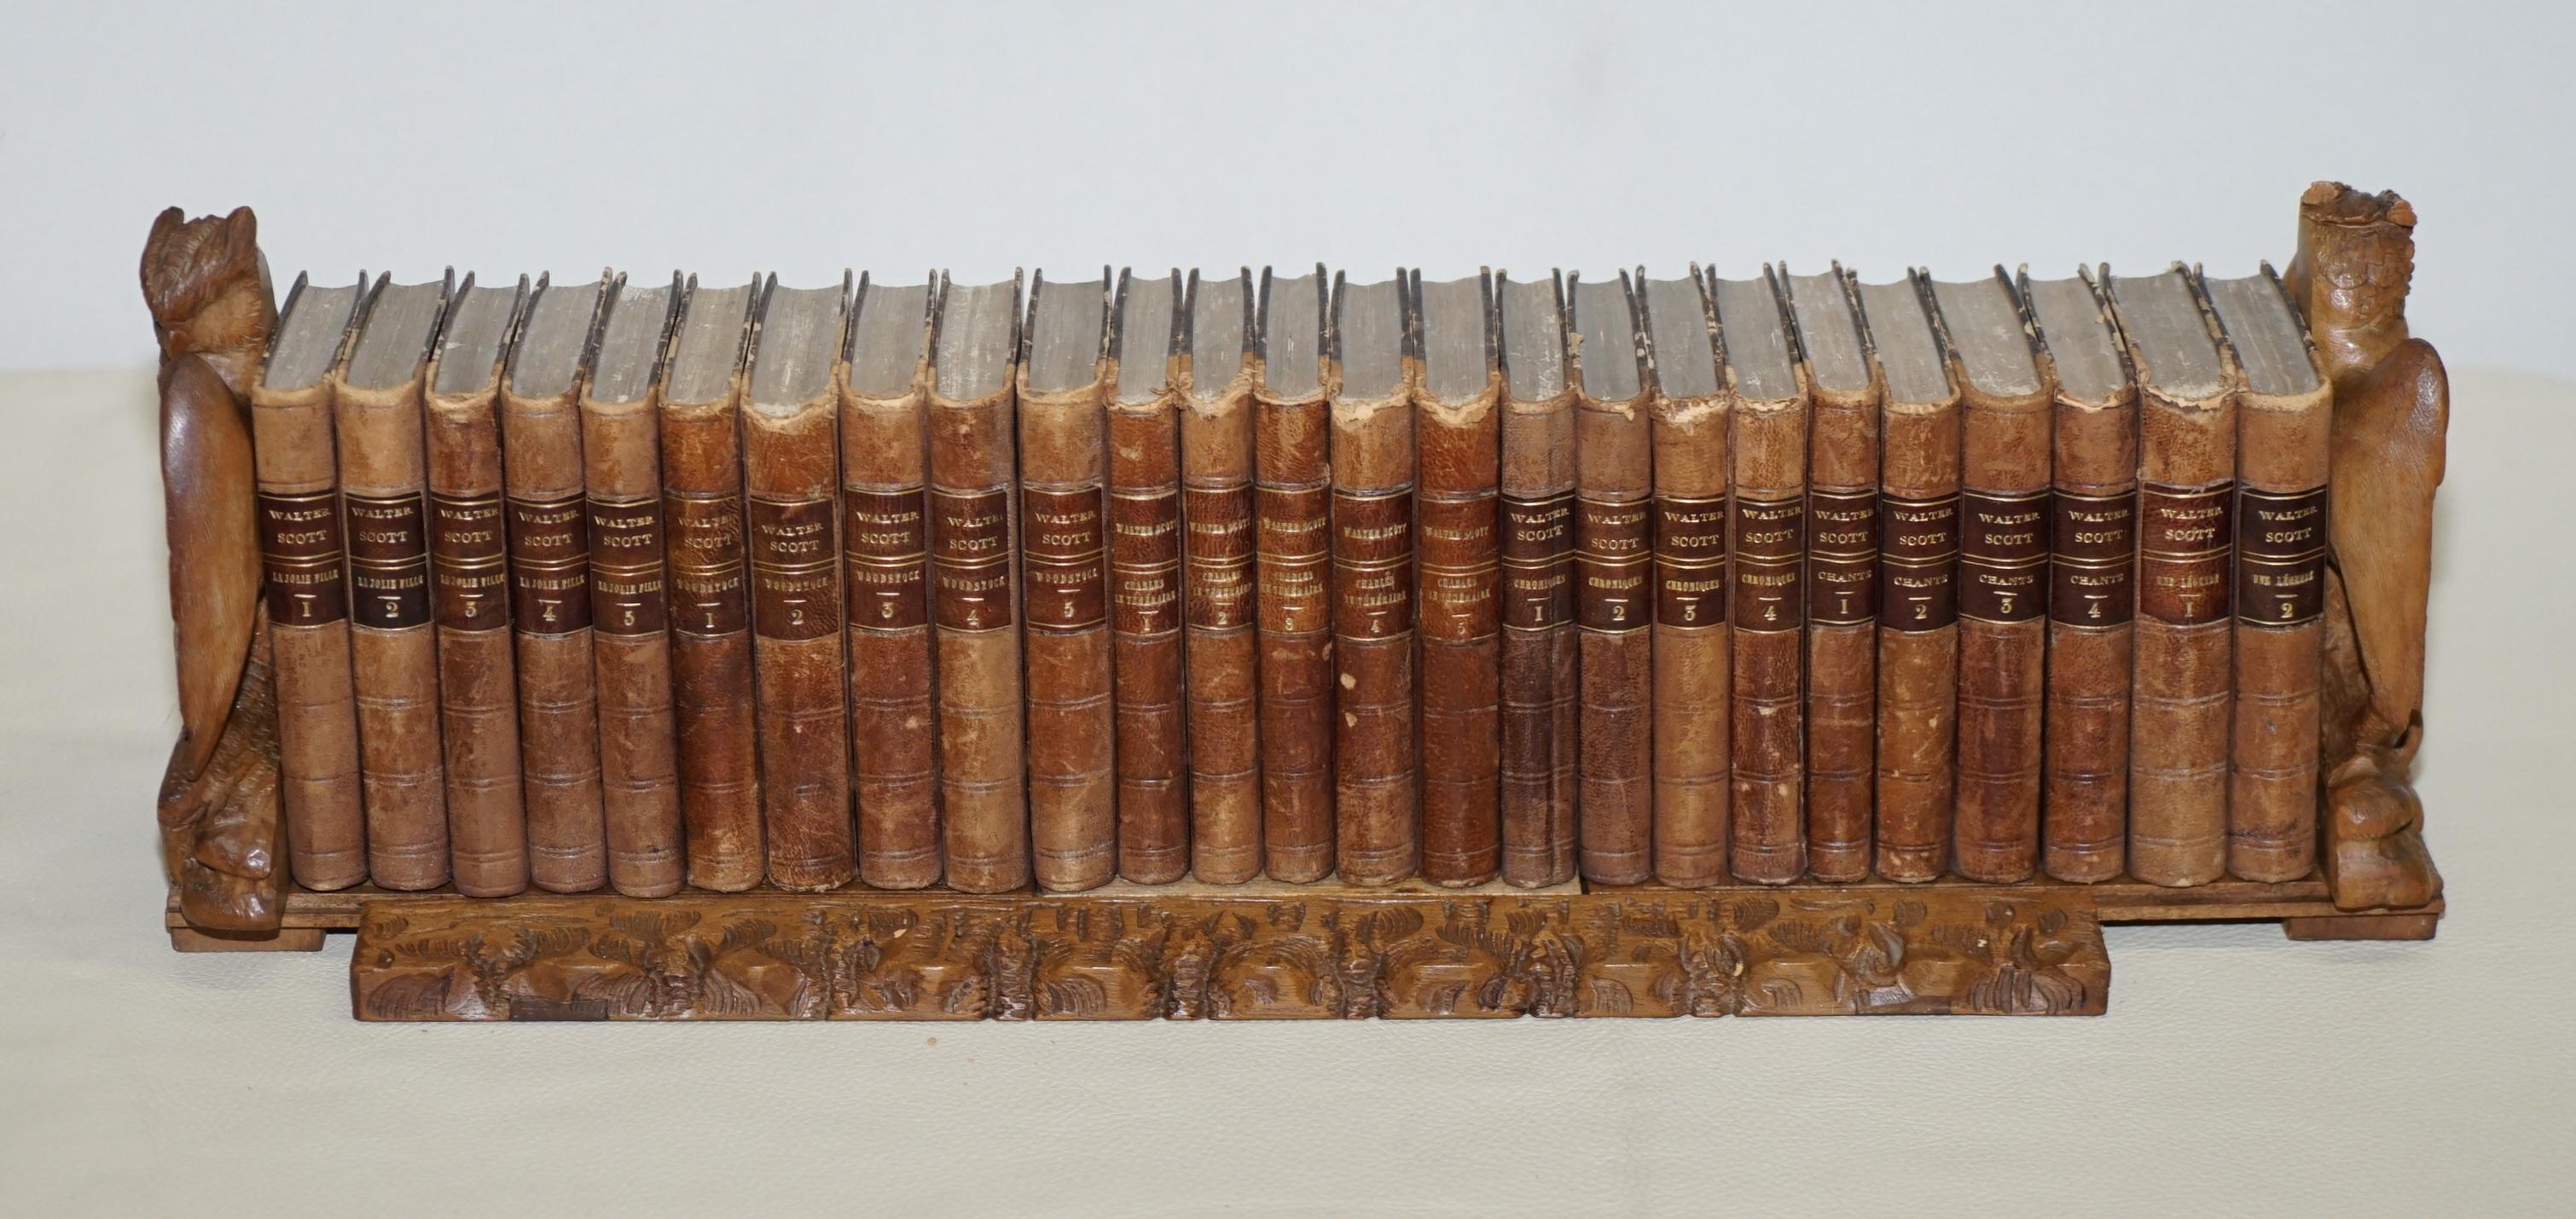 Nous sommes ravis d'offrir à la vente cette sublime bibliothèque originale en bois de forêt noire sculptée à la main, datant de 1900, avec une suite de livres de Sir Walter Scott

Il s'agit d'une très belle pièce, qui peut être utilisée pour la